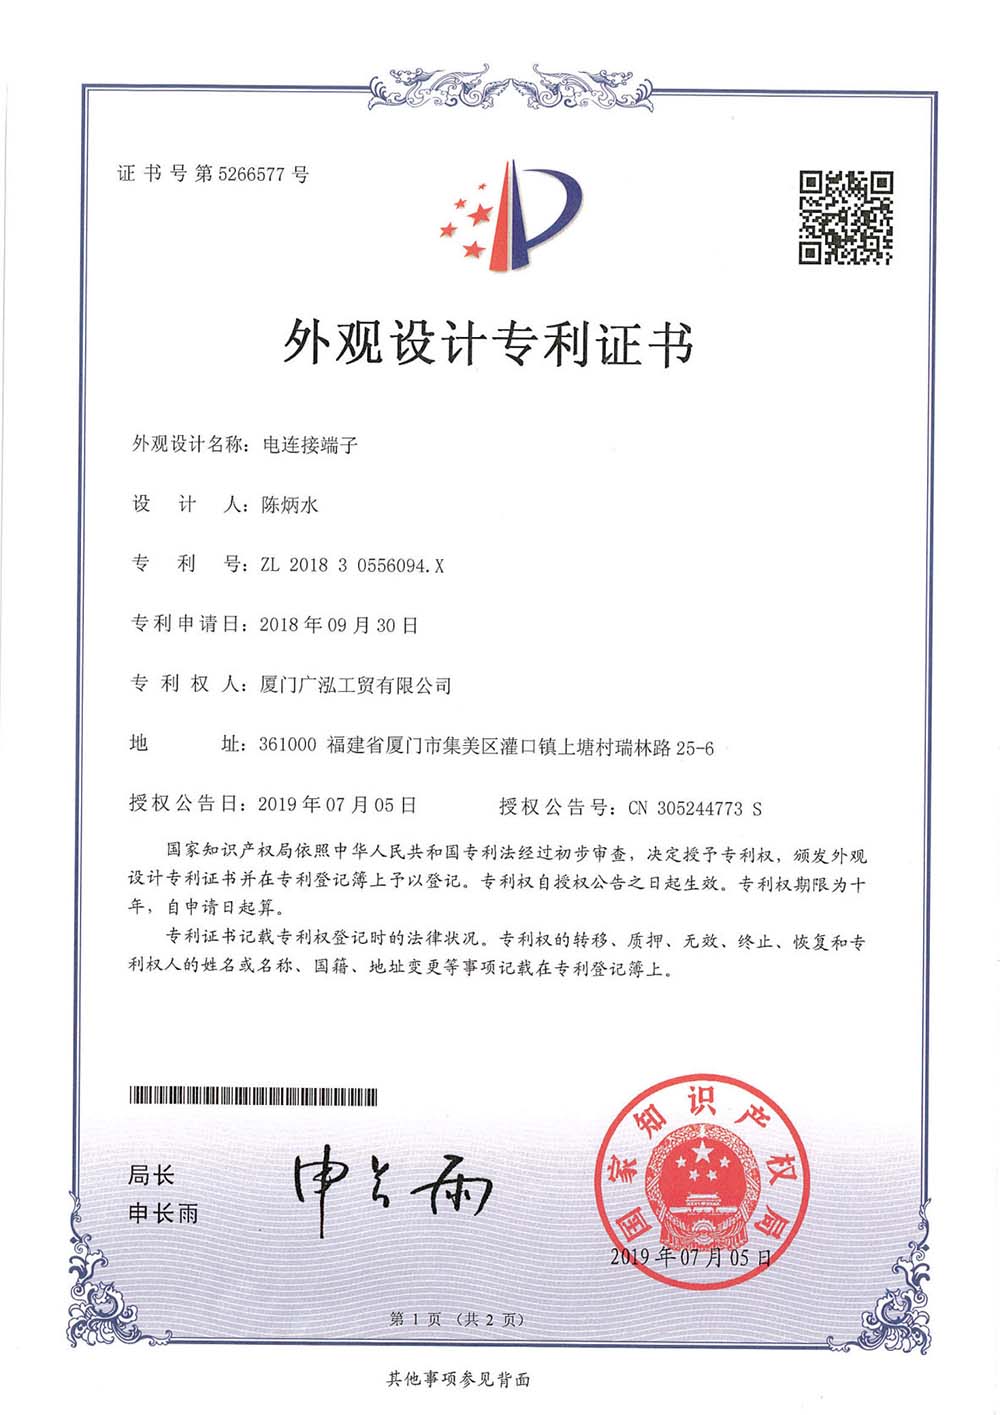 Terminal de conexão elétrica da China 201830556094.X Patente de design de aparência